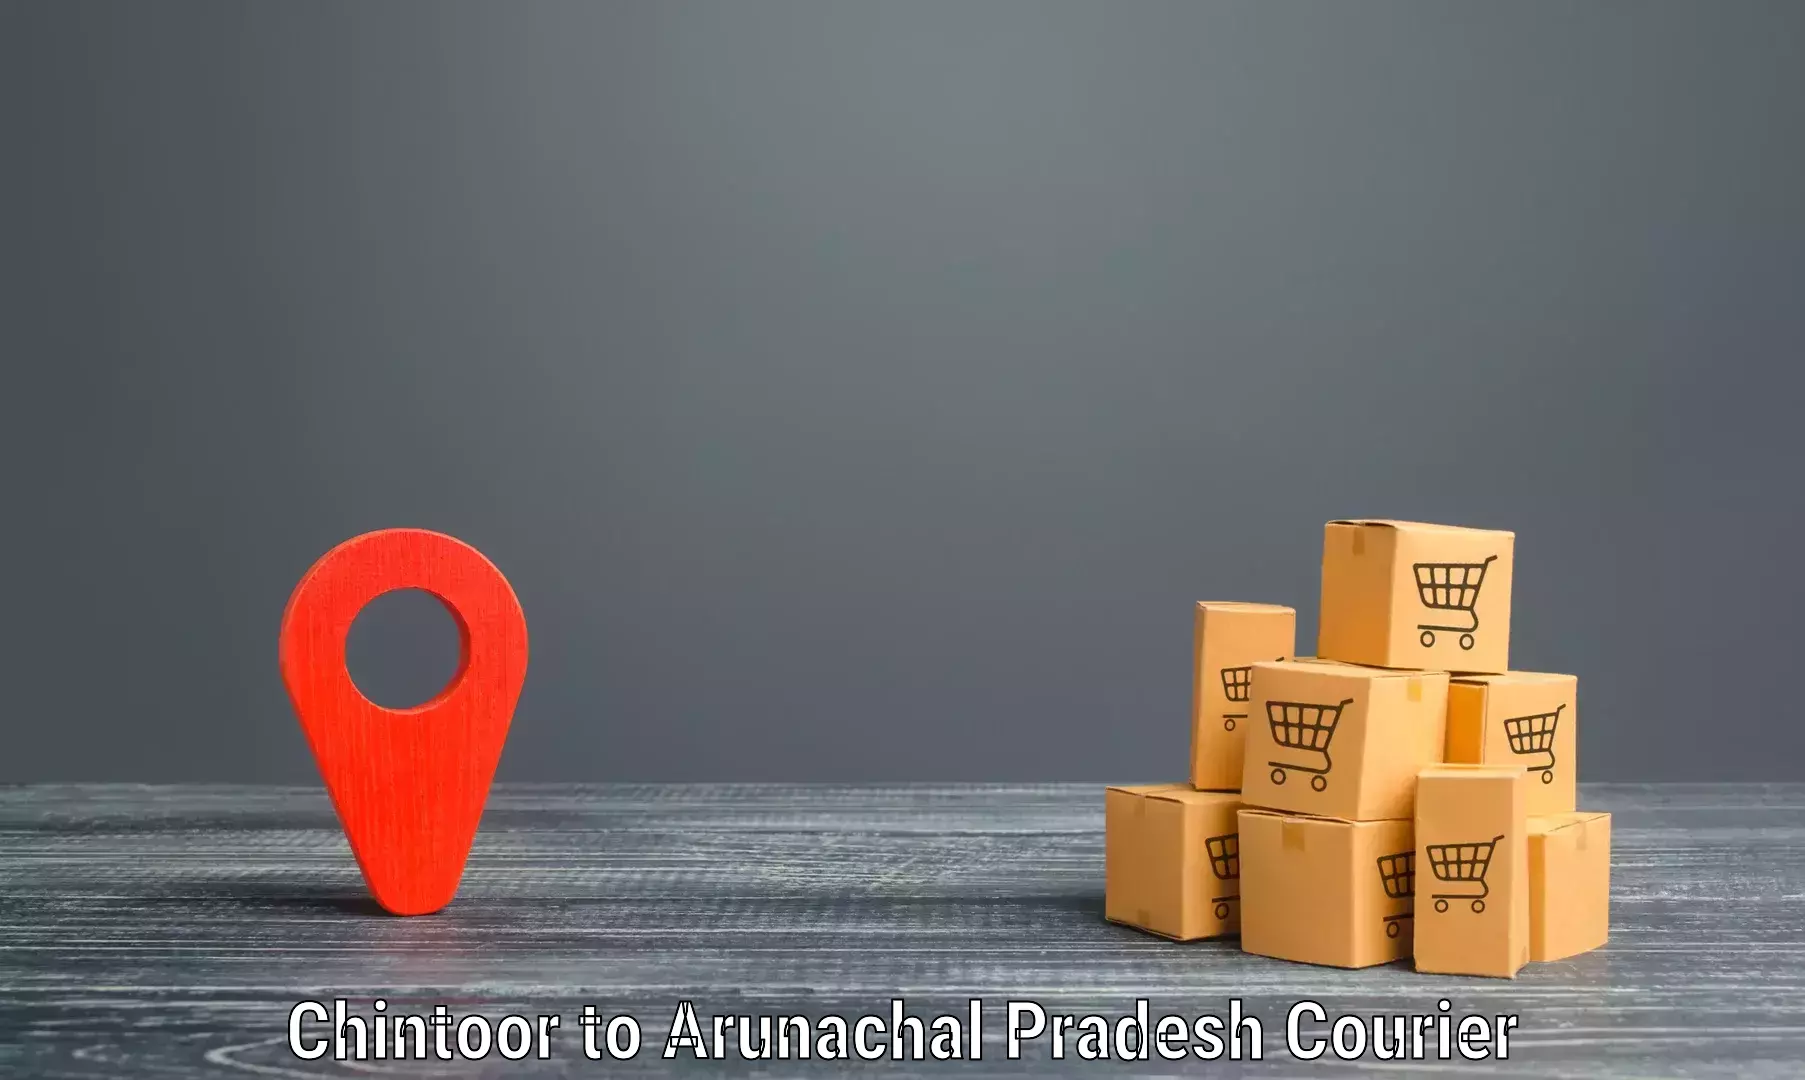 Residential courier service Chintoor to Arunachal Pradesh